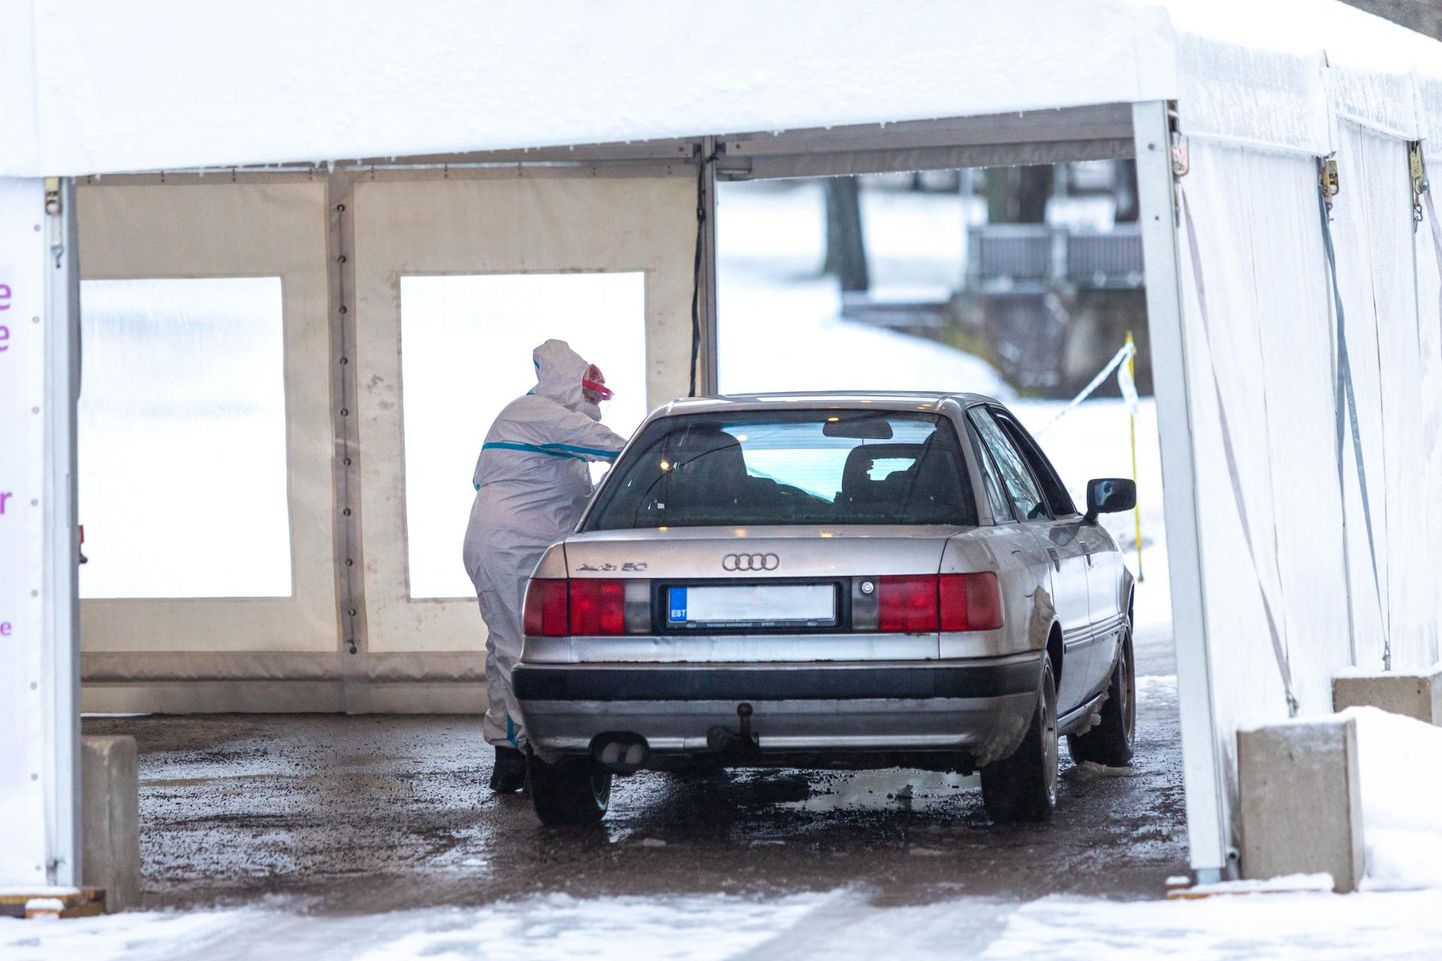 Medicumi testimistelgis Valga spordihalli esises parklas saab koroonaproovi anda autost. Esmaspäeva hommikul oli järjekorras mitu kontrolli tulnut.